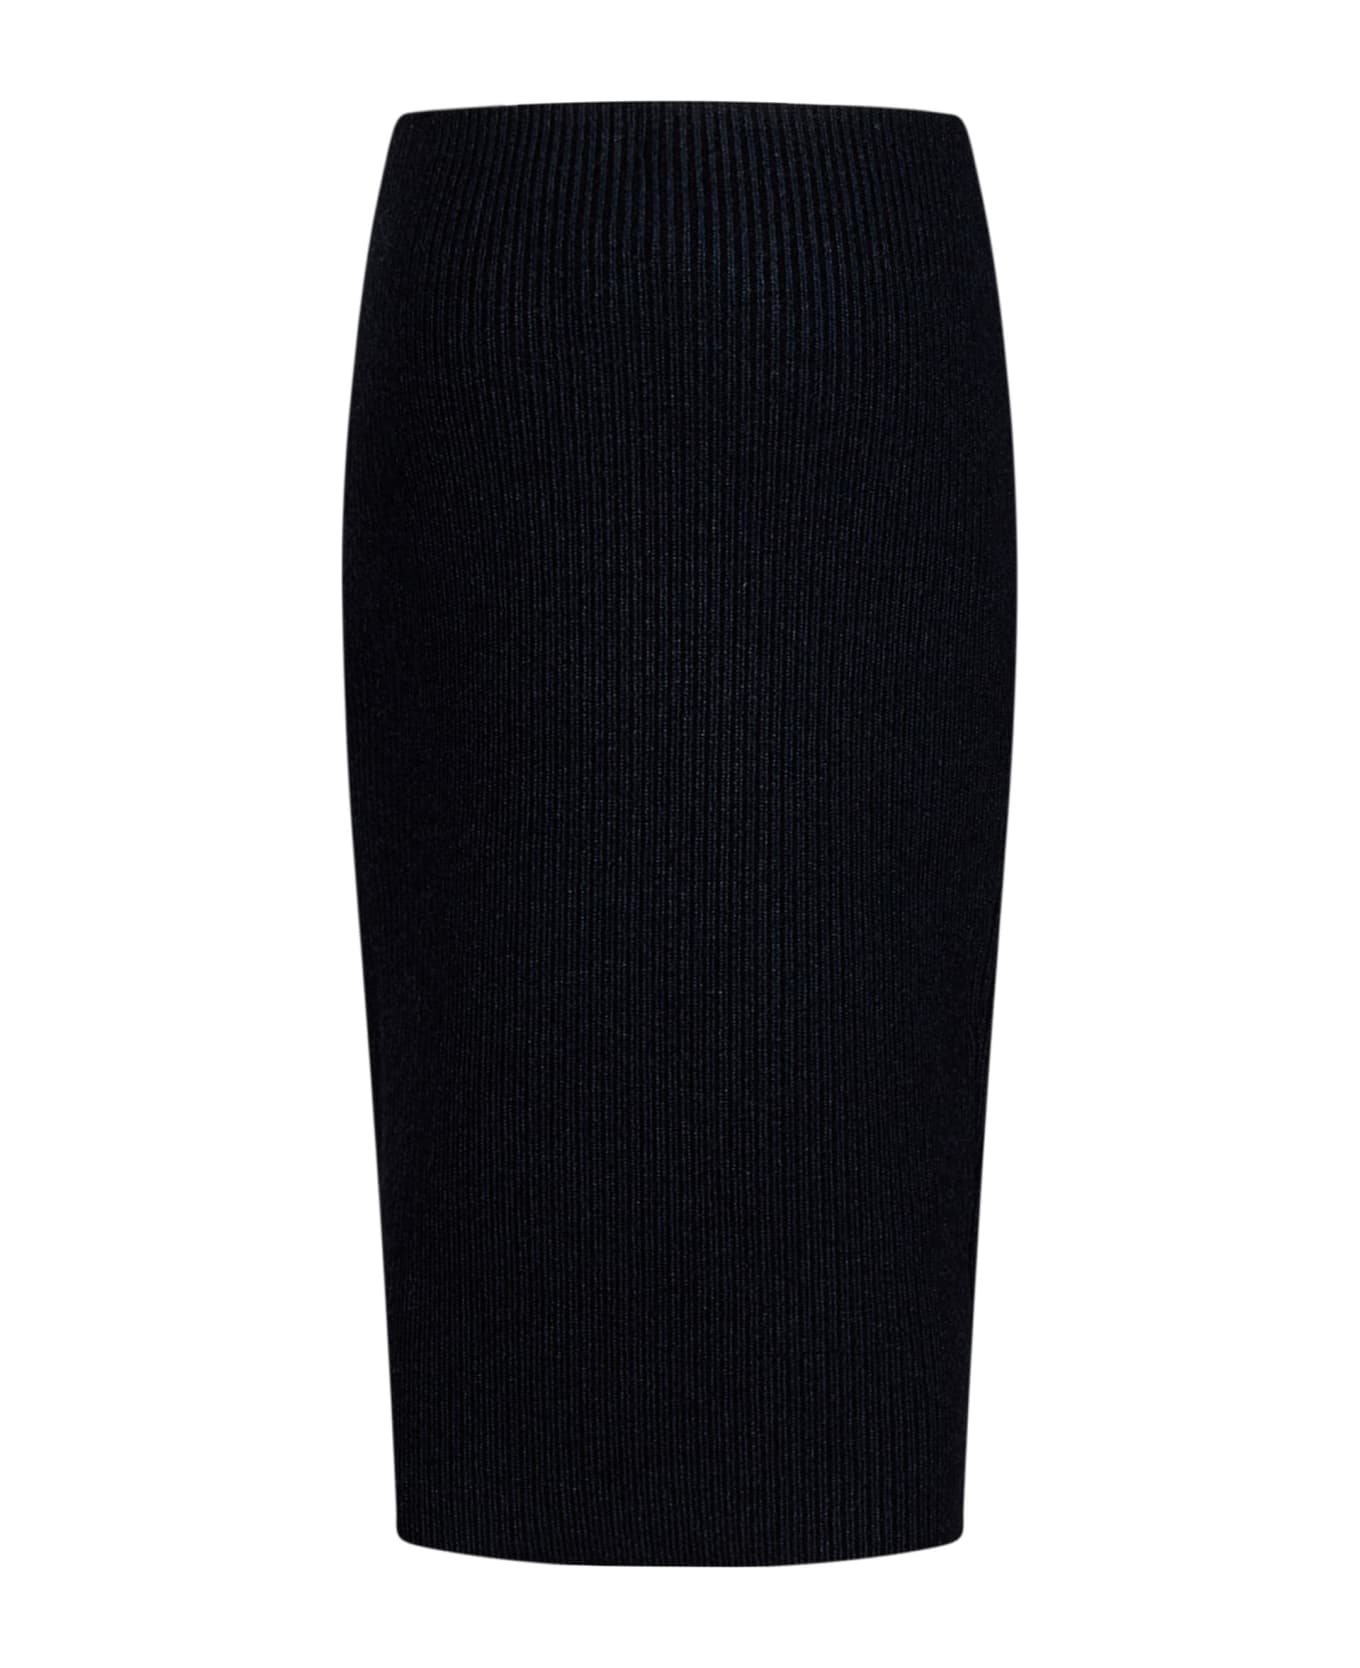 Tom Ford 5gg Skirt - Black スカート